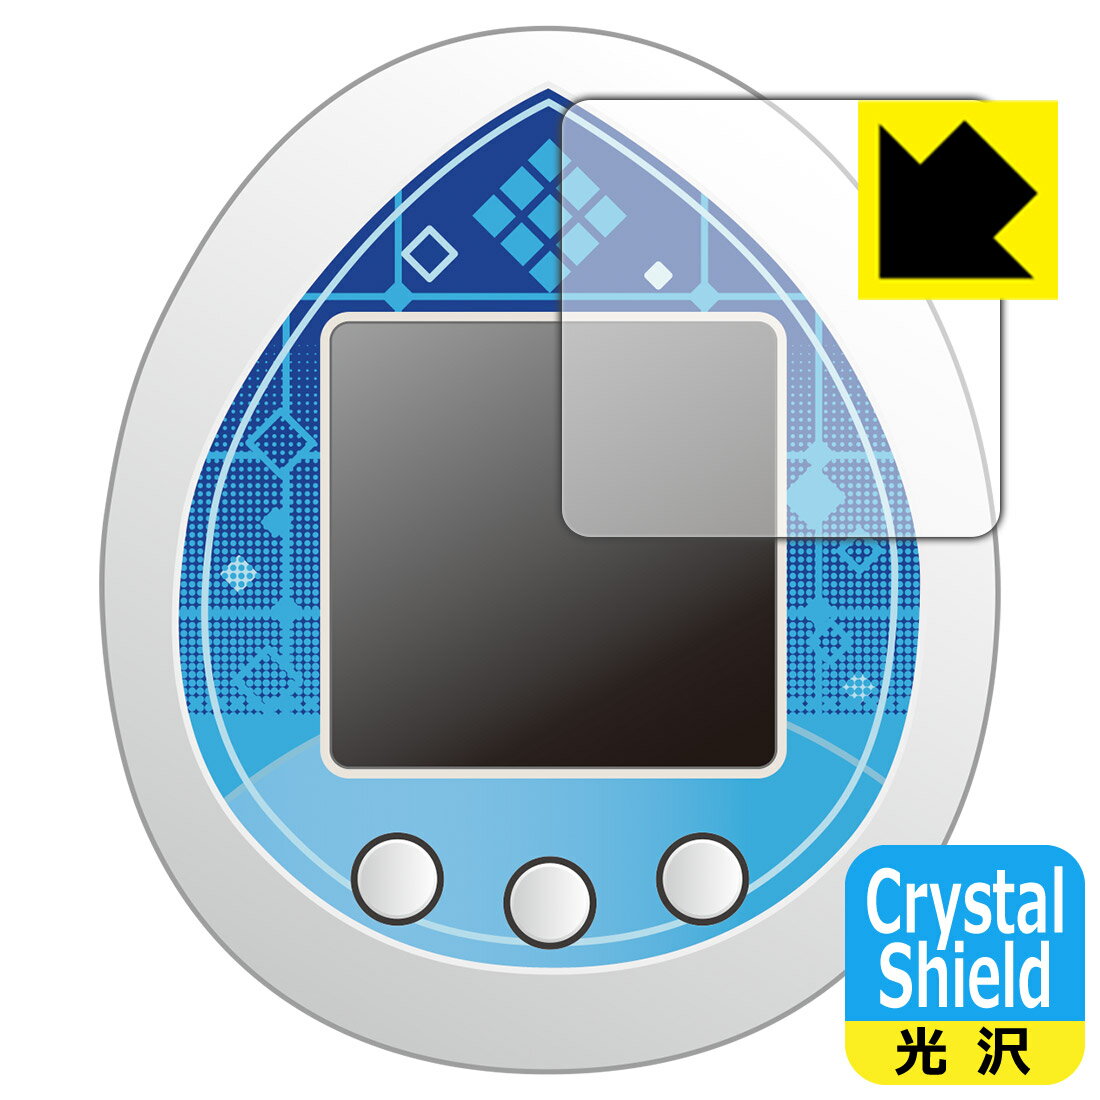 ●対応機種 : Fate/EXTELLA 10周年記念商品「Fate/EXTELLA Celebration BOX」に付属する「えくすてらっち」用の商品です。●内容量 : 3枚●※このページに記載されている会社名や製品名、対応機種名などは各社の商標、または登録商標です。●「Crystal Shield」は高い透明度と光沢感で、保護フィルムを貼っていないかのようなクリア感のある『光沢タイプの保護フィルム』●安心の国産素材を使用。日本国内の自社工場で製造し出荷しています。【ポスト投函送料無料】商品は【ポスト投函発送 (追跡可能メール便)】で発送します。お急ぎ、配達日時を指定されたい方は以下のクーポンを同時購入ください。【お急ぎ便クーポン】　プラス110円(税込)で速達扱いでの発送。お届けはポストへの投函となります。【配達日時指定クーポン】　プラス550円(税込)で配達日時を指定し、宅配便で発送させていただきます。【お急ぎ便クーポン】はこちらをクリック【配達日時指定クーポン】はこちらをクリック 　 貼っていることを意識させないほどの高い透明度に、高級感あふれる光沢・クリアな仕上げとなります。 動画視聴や画像編集など、機器本来の発色を重視したい方におすすめです。 ハードコート加工がされており、キズや擦れに強くなっています。簡単にキズがつかず長くご利用いただけます。 表面はフッ素コーティングがされており、皮脂や汚れがつきにくく、また、落ちやすくなっています。 指滑りもなめらかで、快適な使用感です。 油性マジックのインクもはじきますので簡単に拭き取れます。 接着面は気泡の入りにくい特殊な自己吸着タイプです。素材に柔軟性があり、貼り付け作業も簡単にできます。また、はがすときにガラス製フィルムのように割れてしまうことはありません。 貼り直しが何度でもできるので、正しい位置へ貼り付けられるまでやり直すことができます。 抗菌加工によりフィルム表面の菌の繁殖を抑えることができます。清潔な画面を保ちたい方におすすめです。 ※抗菌率99.9％ / JIS Z2801 抗菌性試験方法による評価 最高級グレードの国産素材を日本国内の弊社工場で加工している完全な Made in Japan です。安心の品質をお届けします。 使用上の注意 ●本製品は機器の画面をキズなどから保護するフィルムです。他の目的にはご使用にならないでください。 ●本製品は液晶保護および機器本体を完全に保護することを保証するものではありません。機器の破損、損傷、故障、その他損害につきましては一切の責任を負いかねます。 ●製品の性質上、画面操作の反応が変化したり、表示等が変化して見える場合がございます。 ●貼り付け作業時の失敗(位置ズレ、汚れ、ゆがみ、折れ、気泡など)および取り外し作業時の破損、損傷などについては、一切の責任を負いかねます。 ●水に濡れた状態でのご使用は吸着力の低下などにより、保護フィルムがはがれてしまう場合がございます。防水対応の機器でご使用の場合はご注意ください。 ●アルコール類やその他薬剤を本製品に付着させないでください。表面のコーティングや吸着面が変質するおそれがあります。 ●品質向上のため、仕様などを予告なく変更する場合がございますので、予めご了承ください。